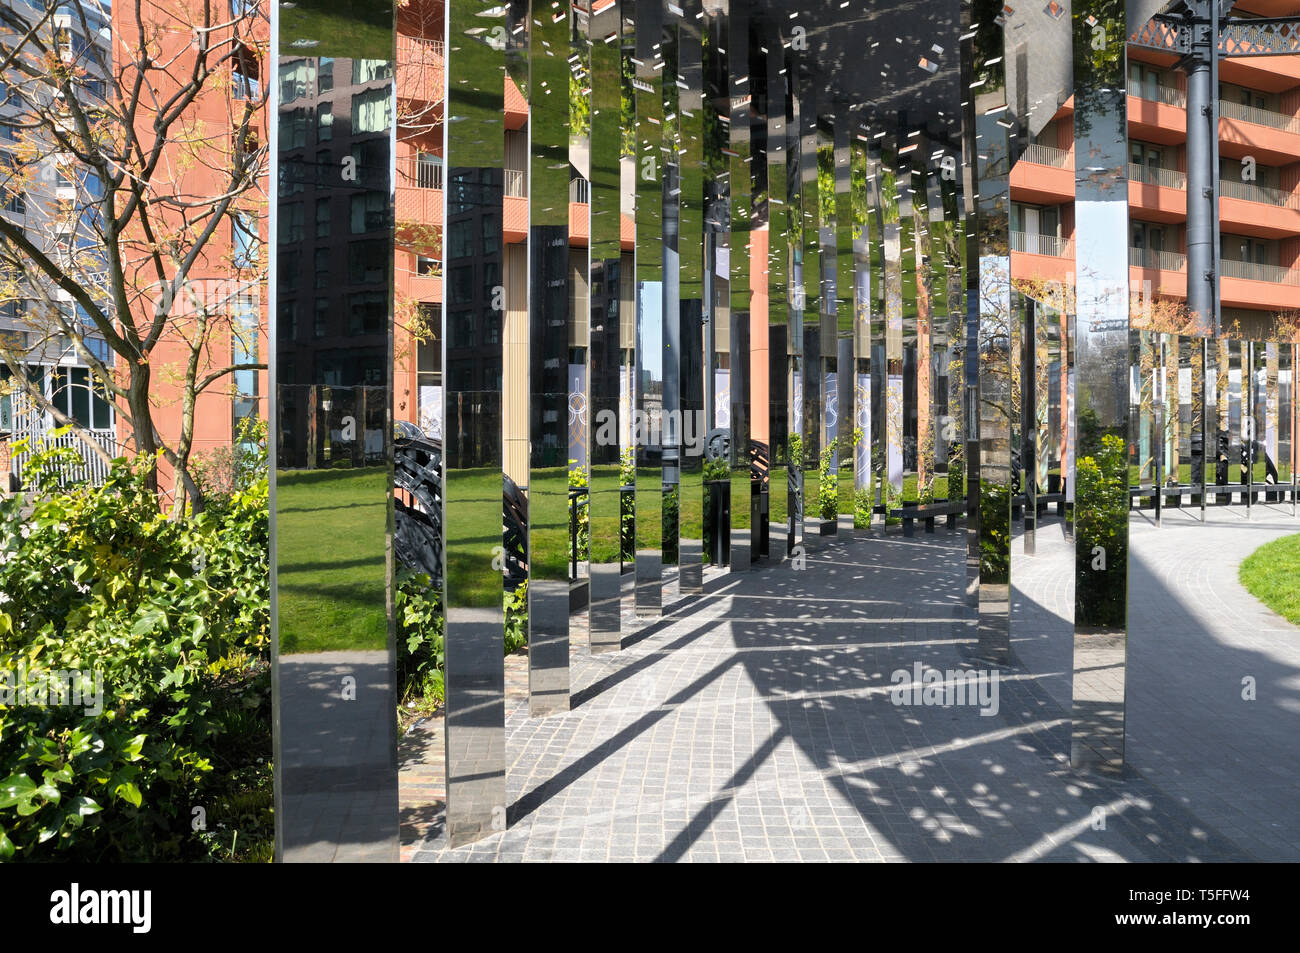 Parc Gasholder à King's Cross, Londres, Angleterre, Royaume-Uni. Allée circulaire avec une série de bandes miroir vertical conçu par Bell Phillips Architectes. Banque D'Images